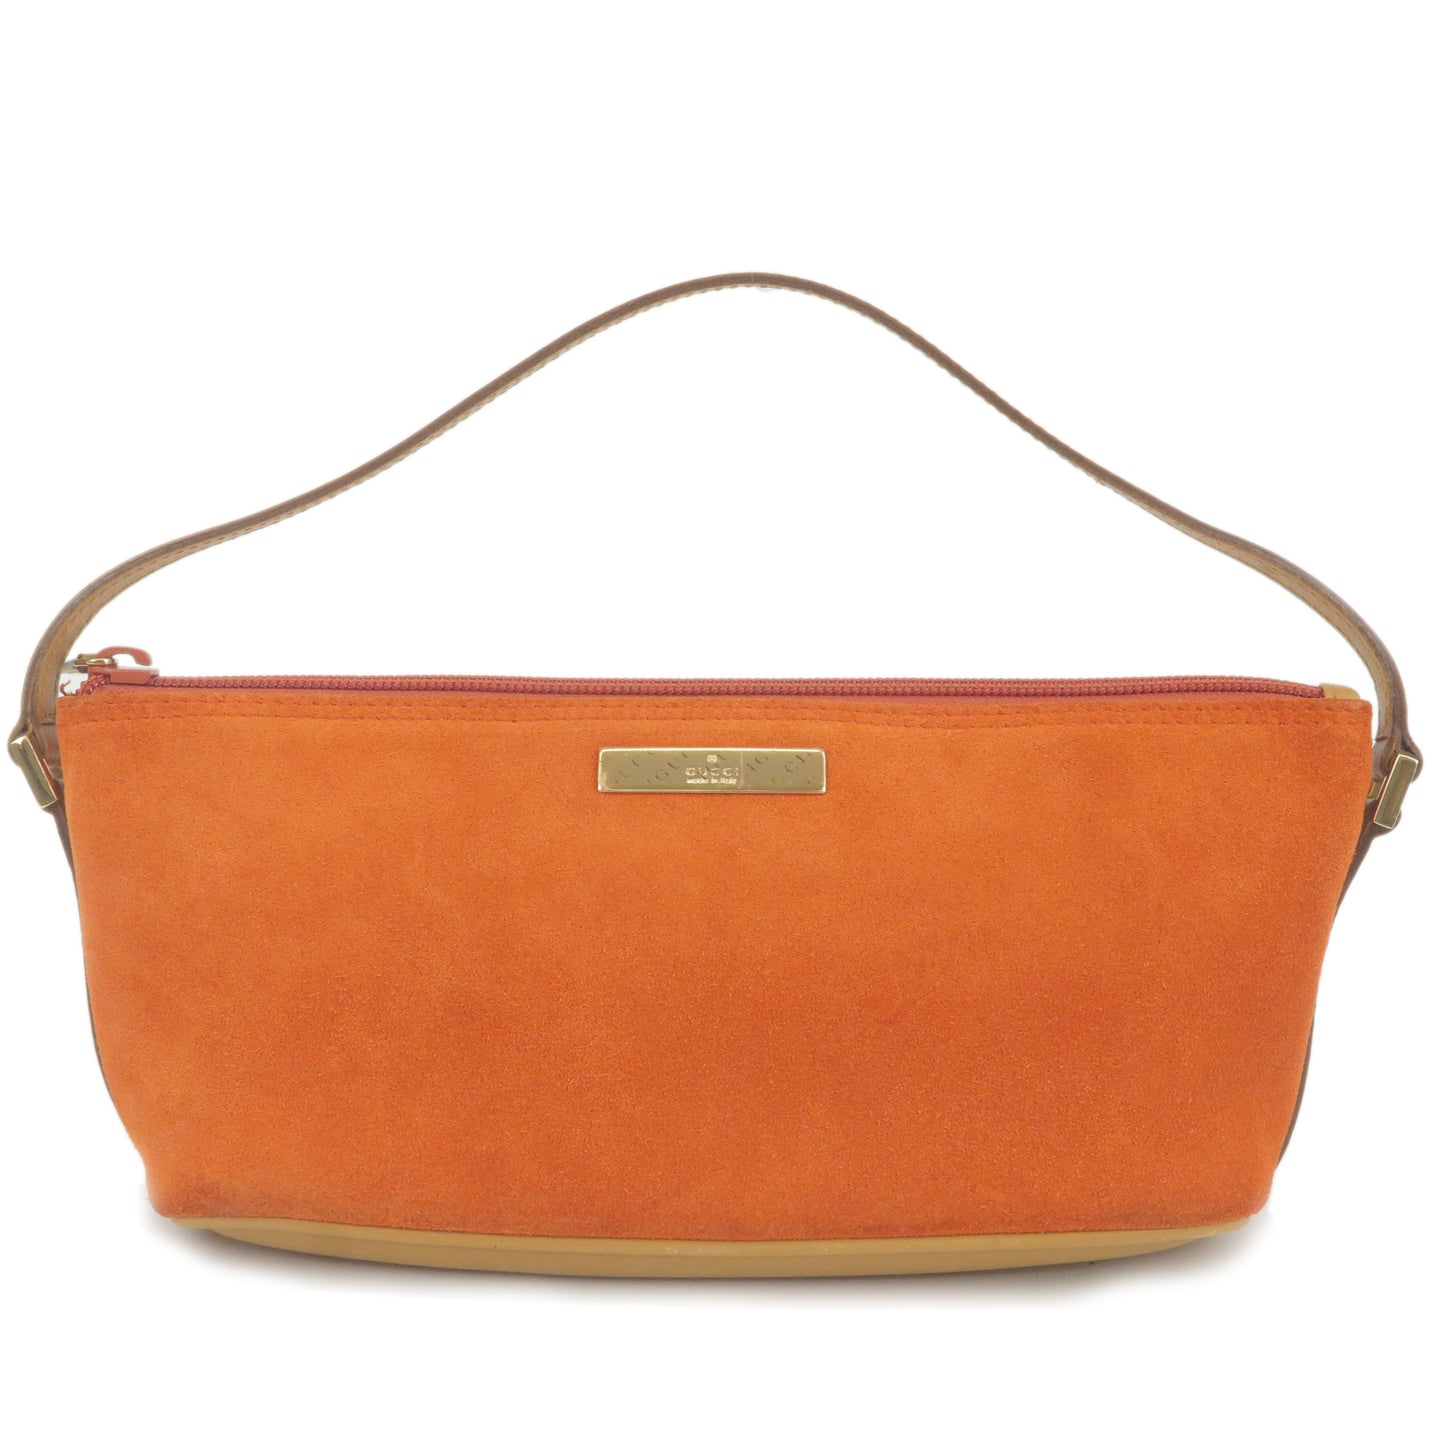 GUCCI-Suede-Leather-Boat-Bag-Shoulder-Bag-Orange-039.1103